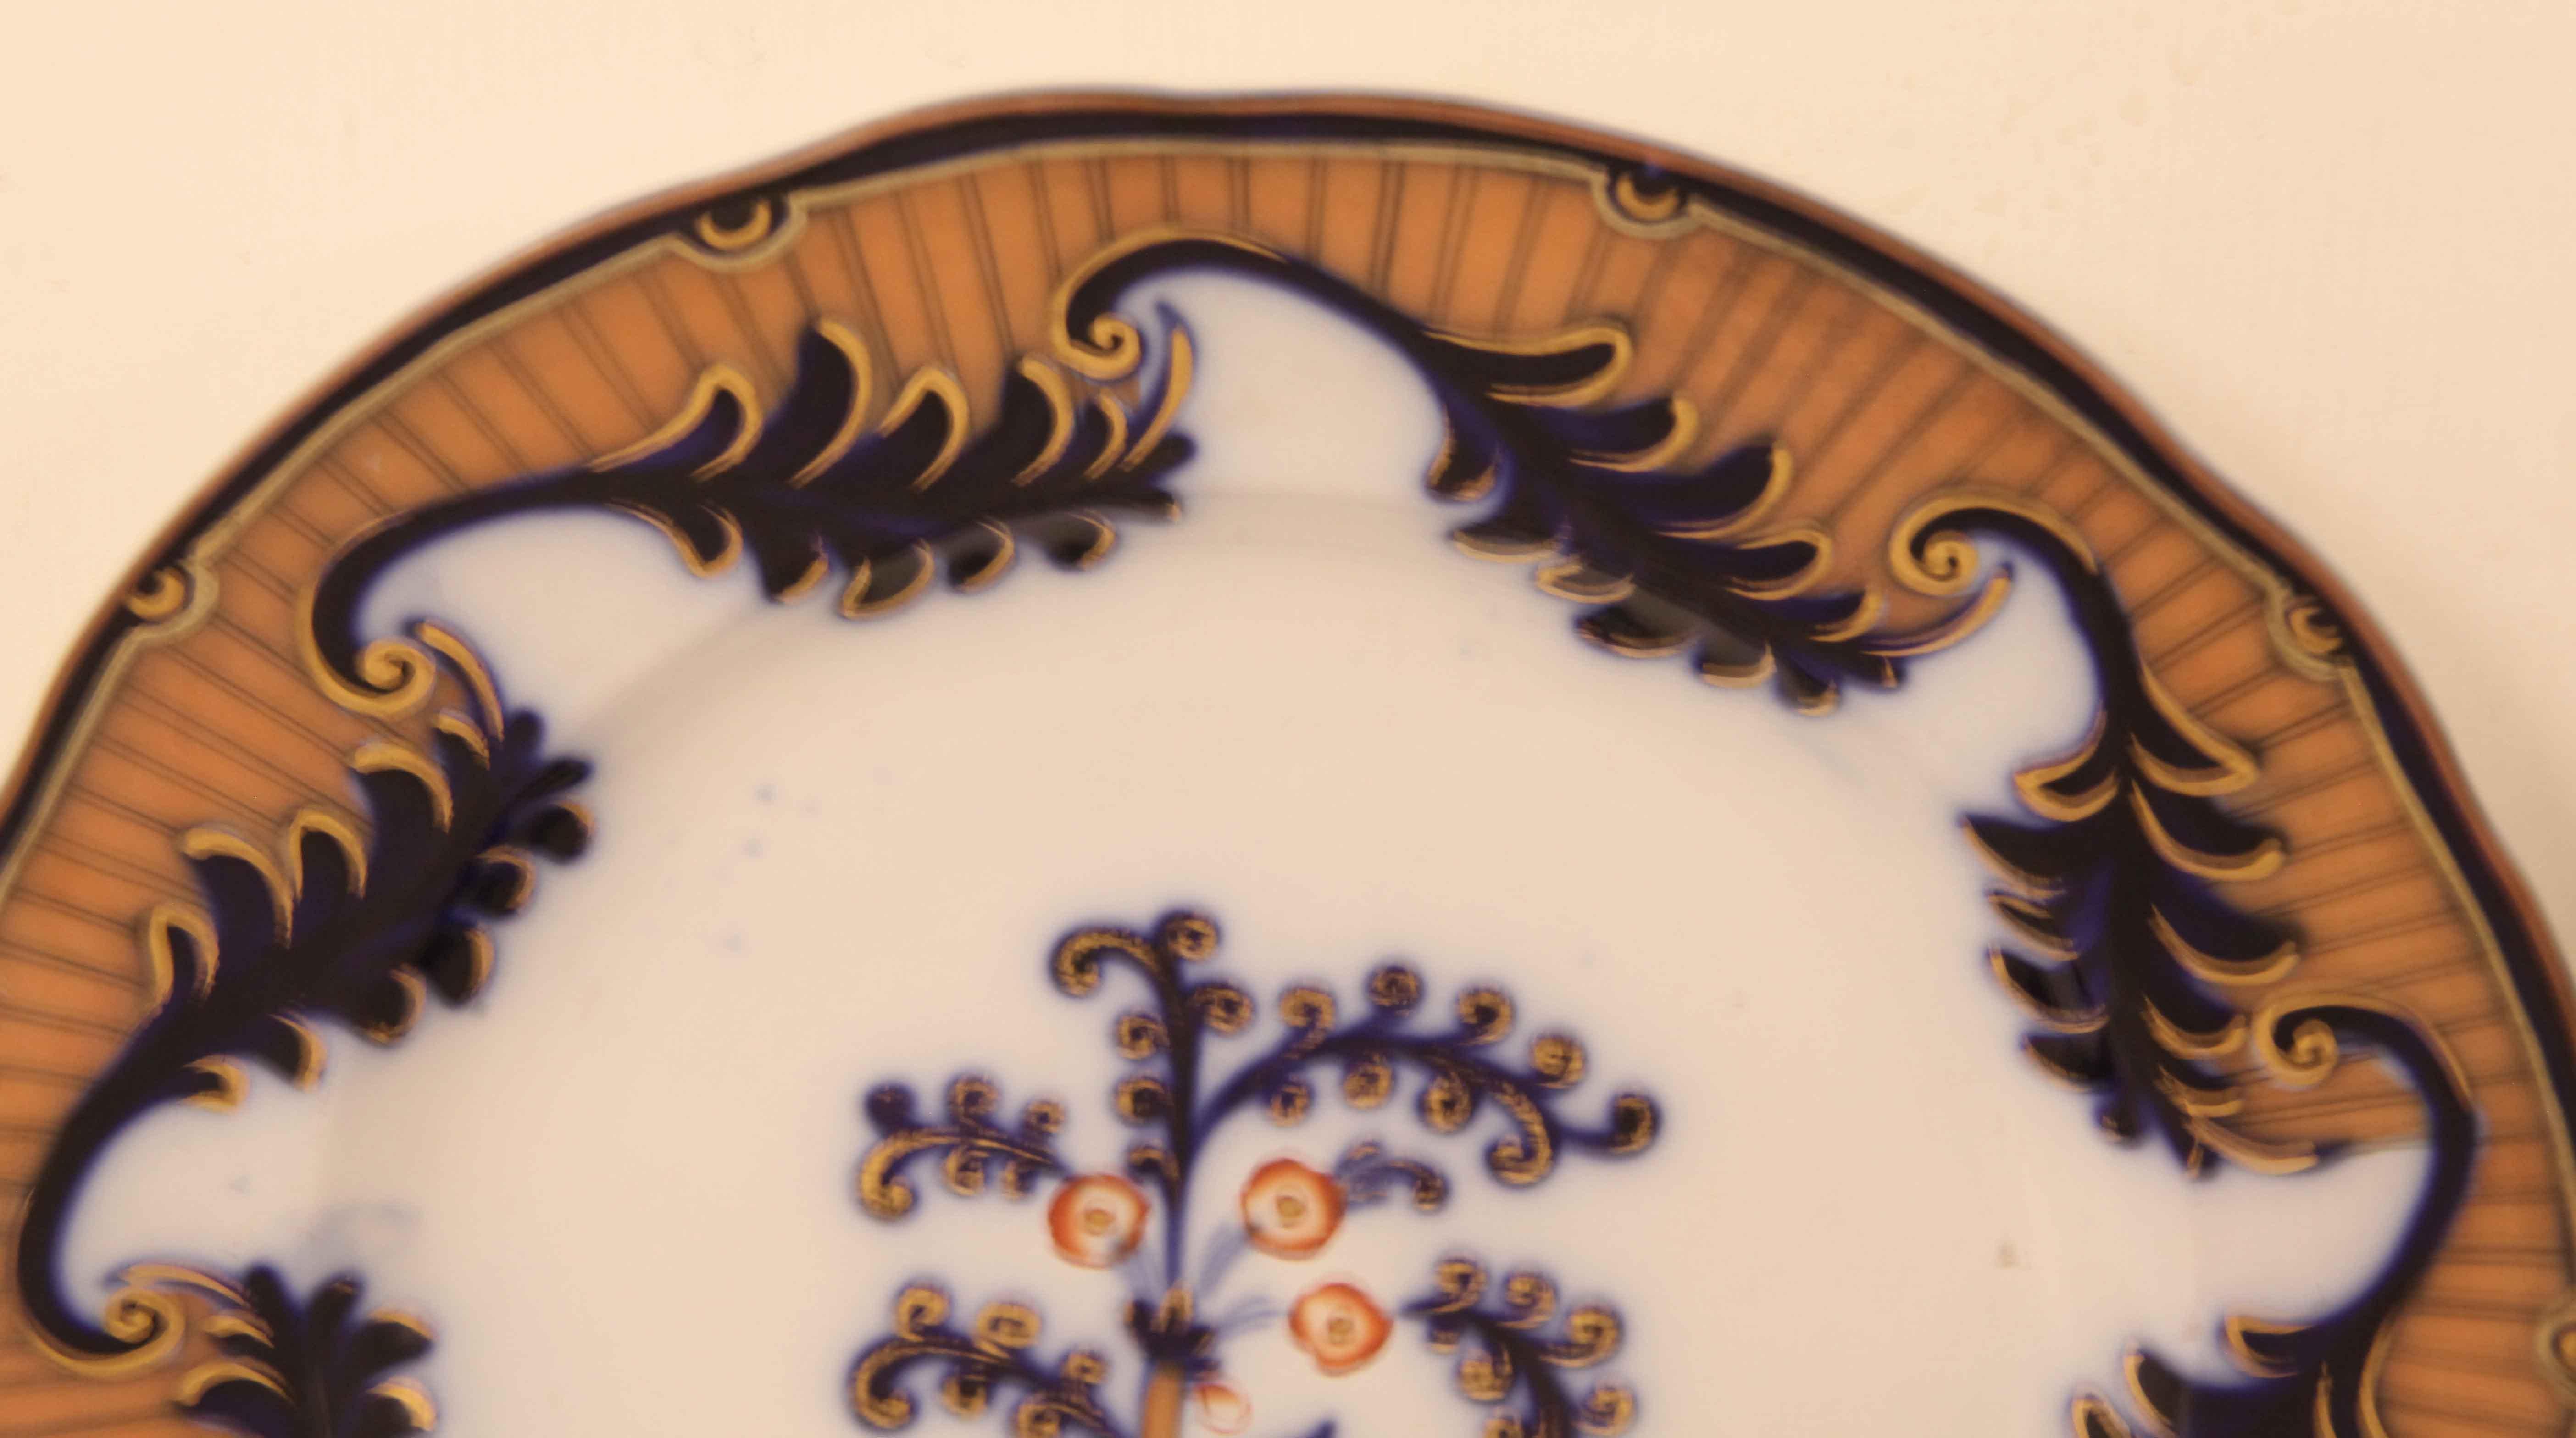 Paire d'assiettes en Staffordshire de couleur bleue, la bordure présente un motif répétitif de feuilles stylisées avec des bords dorés reliés par des volutes, le tout à l'intérieur d'un fond de couleur corail avec des doubles lignes droites en